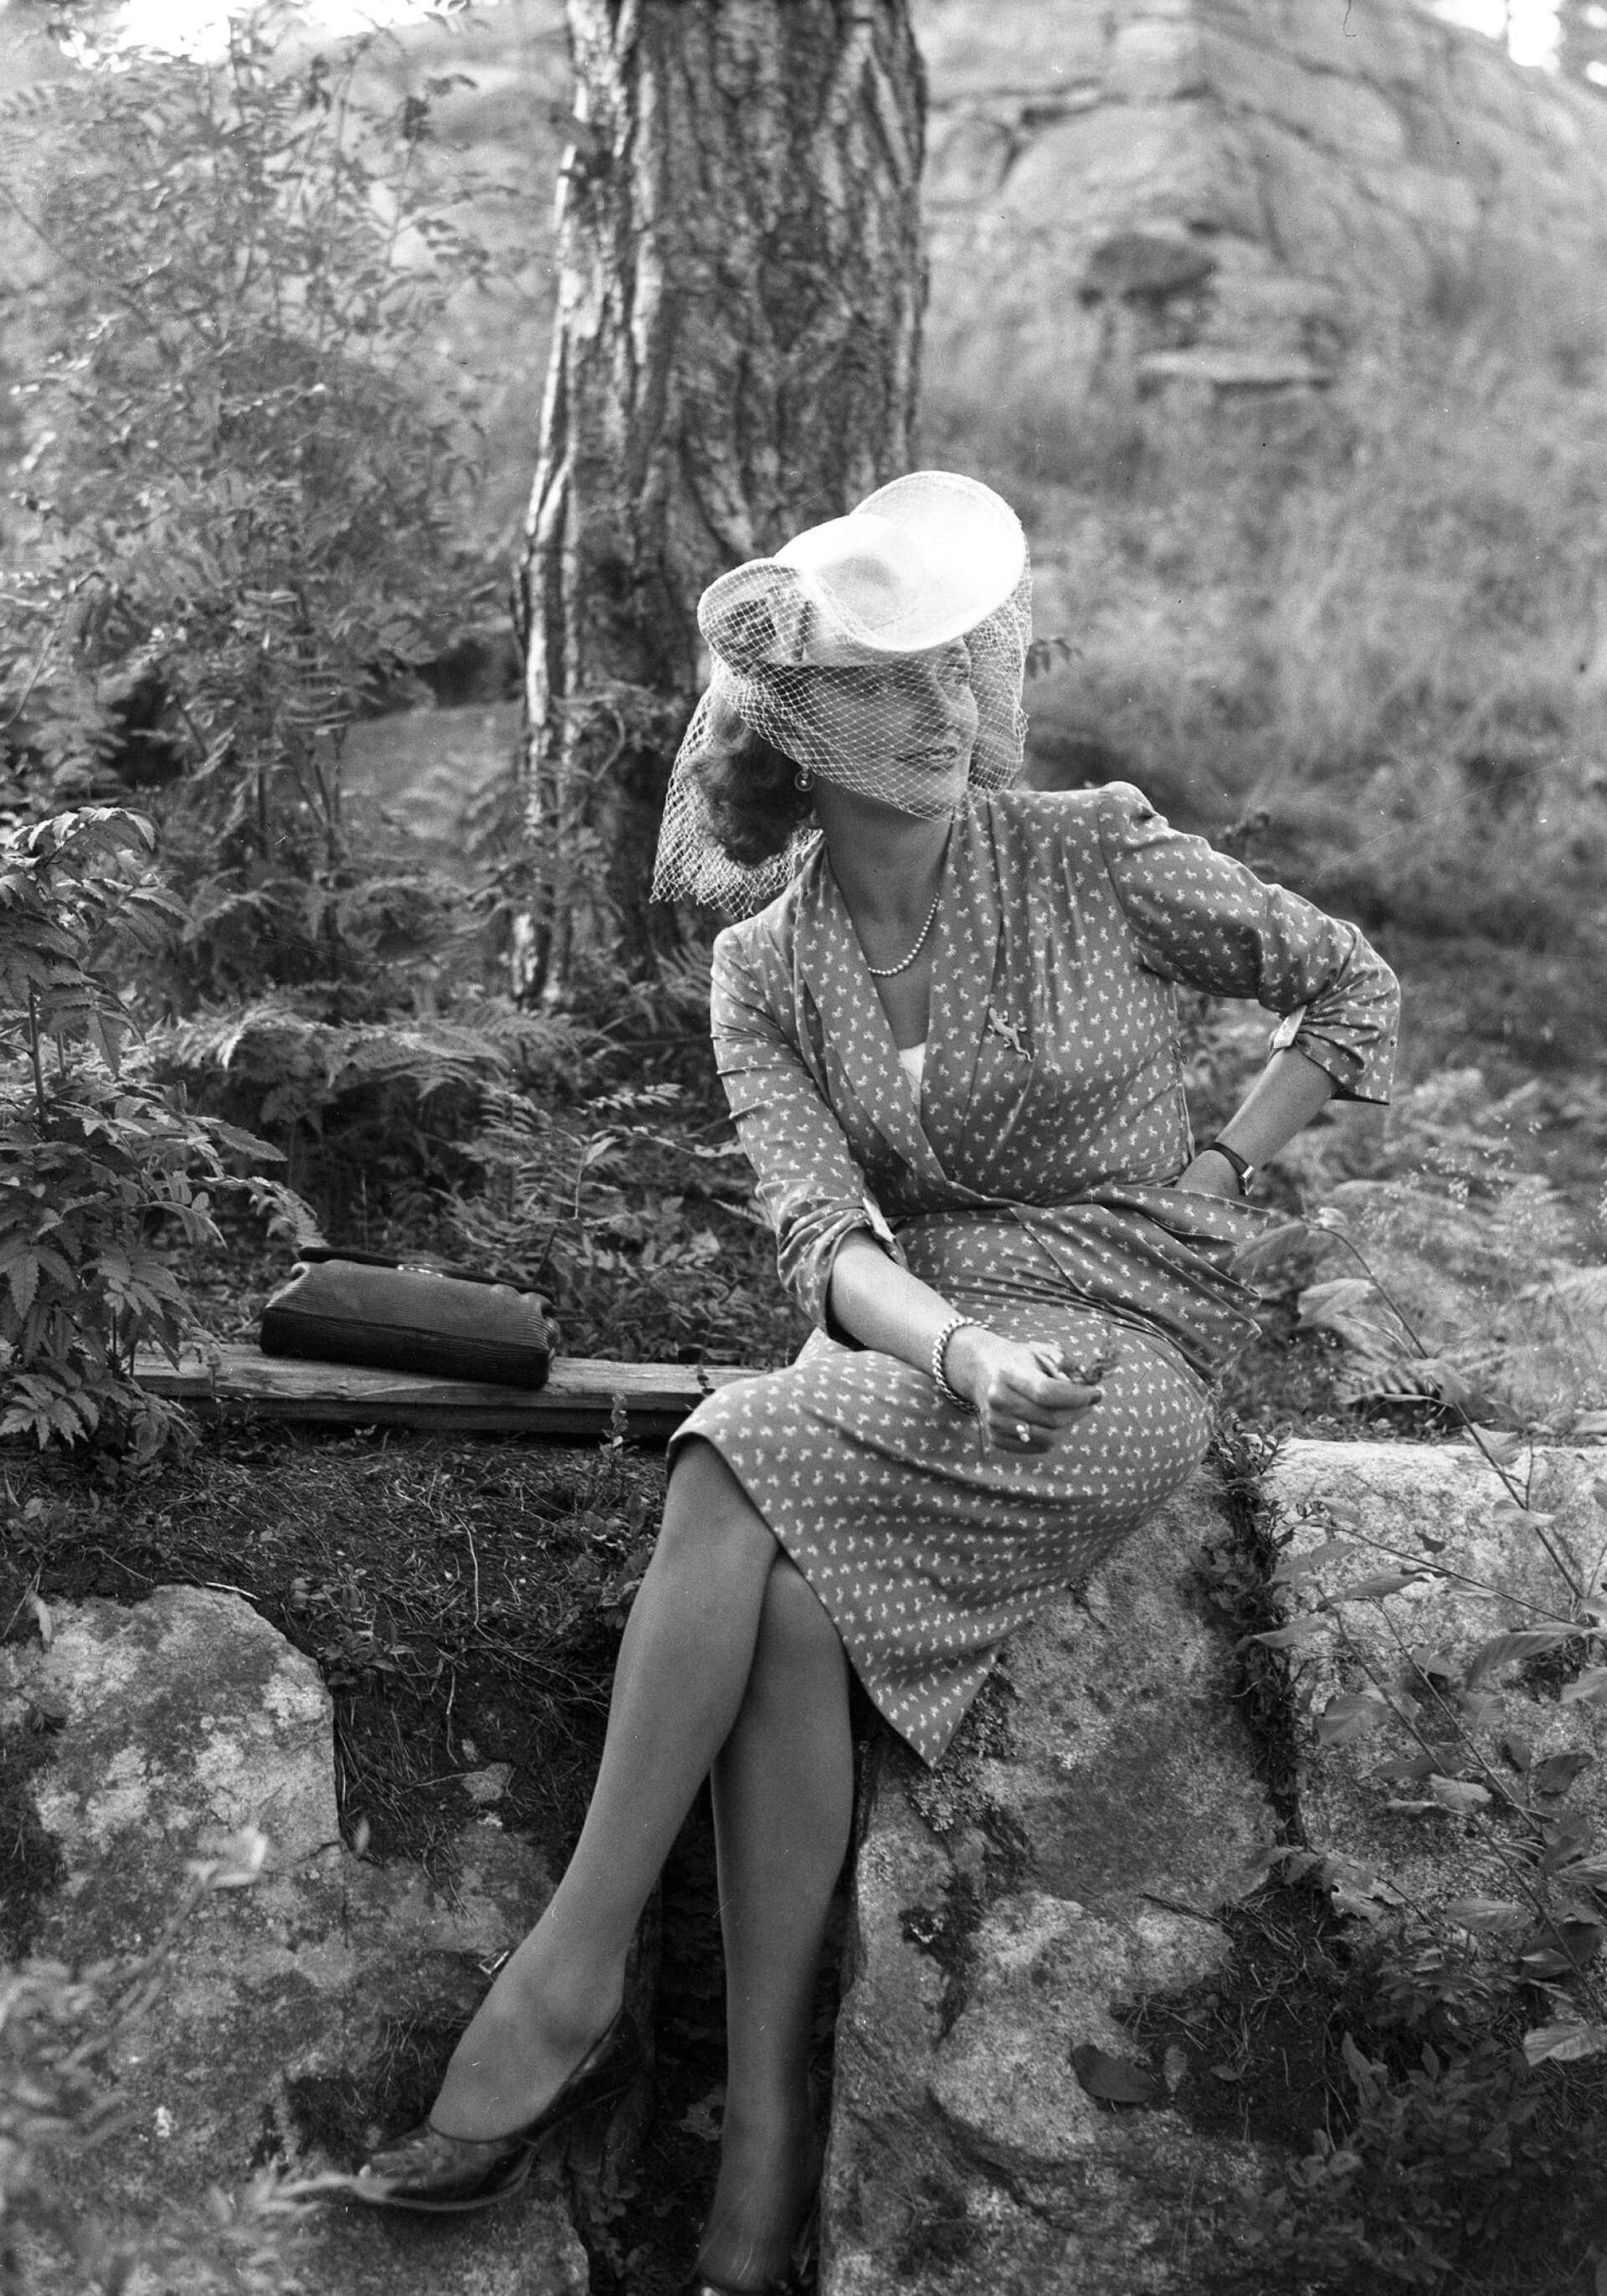 Sångerskan Ulla Billqvist var prisutdelare i Mariebergsskogen när Filmjournalen anordnade en amatörfilmtävling 1944. Vid den här tiden var modet mer feminint än under exempelvis 1920-talet.